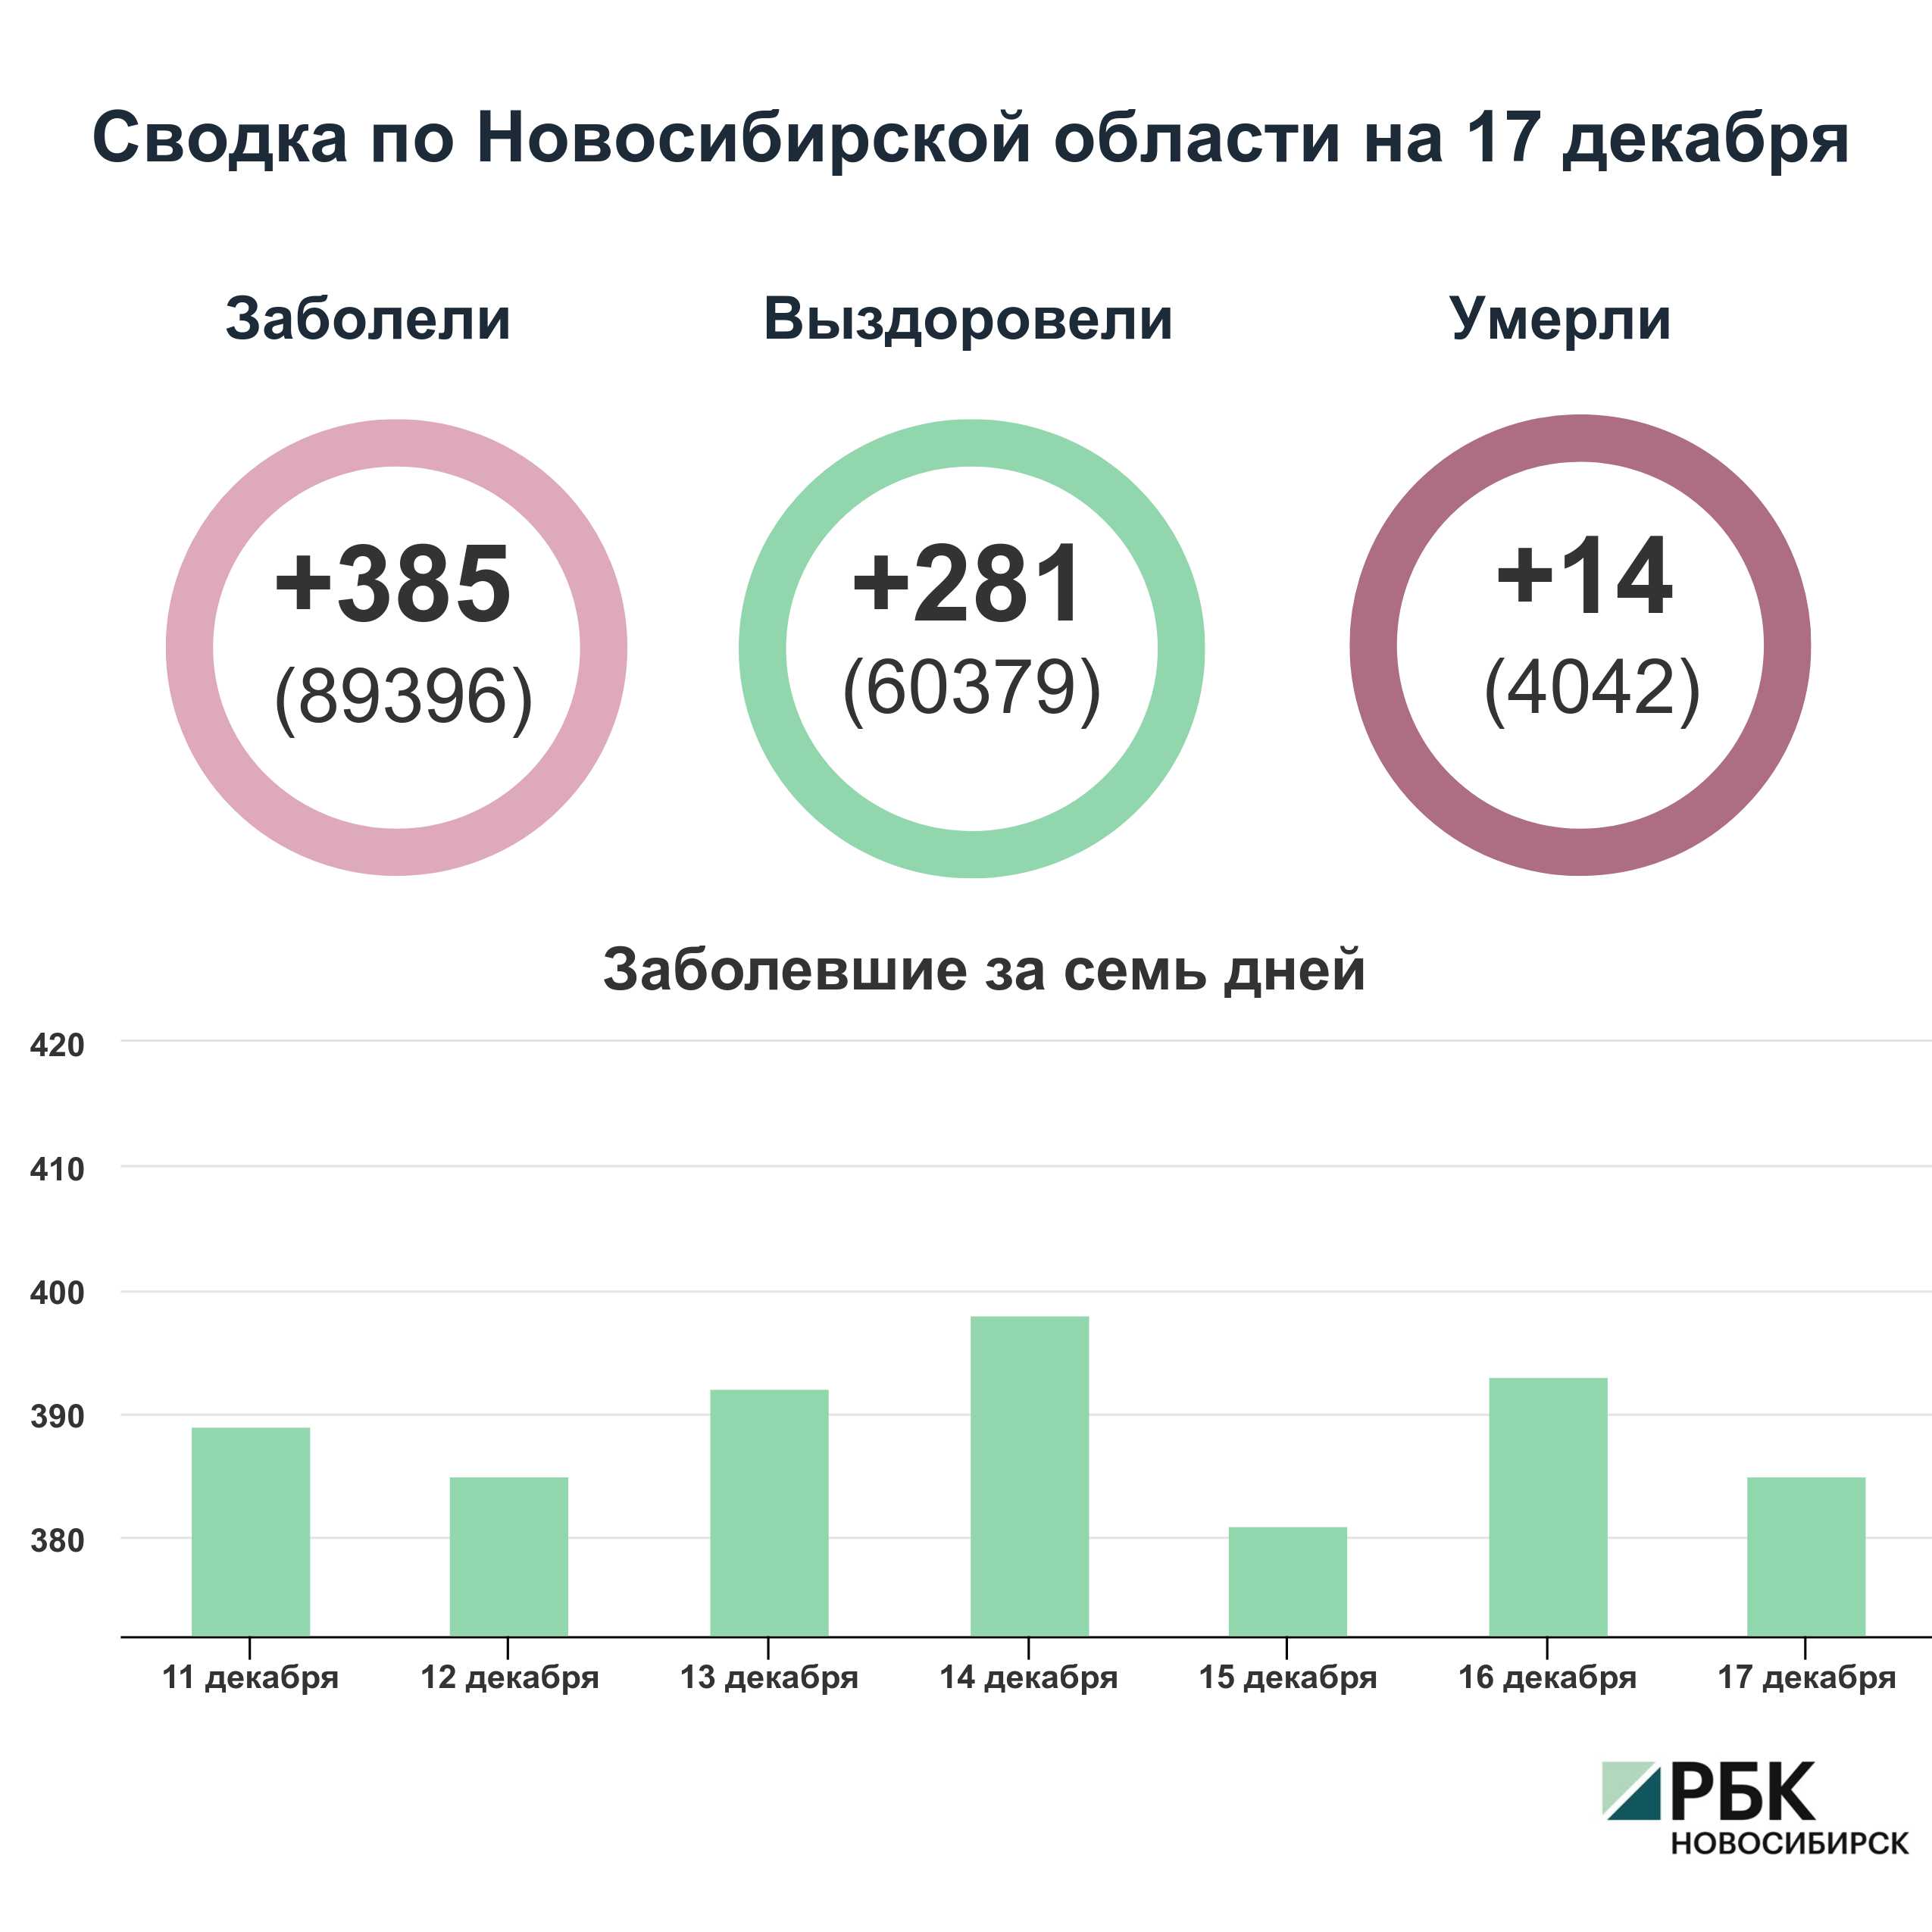 Коронавирус в Новосибирске: сводка на 17 декабря